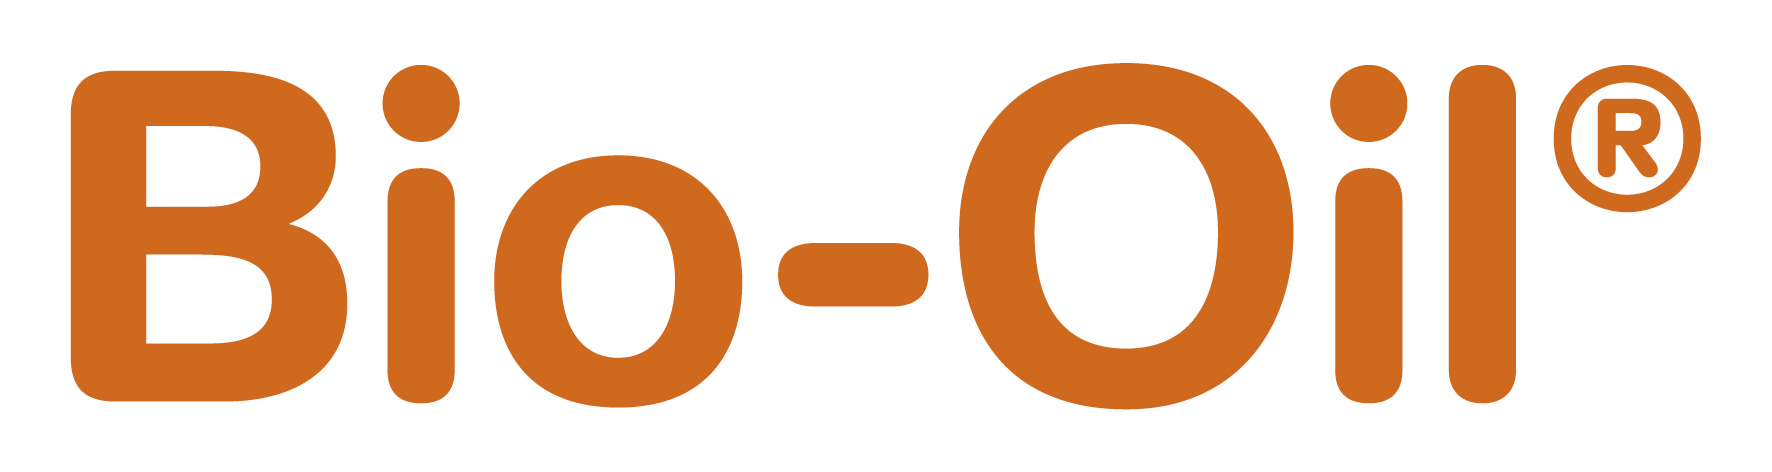 Bio-Oil Logo